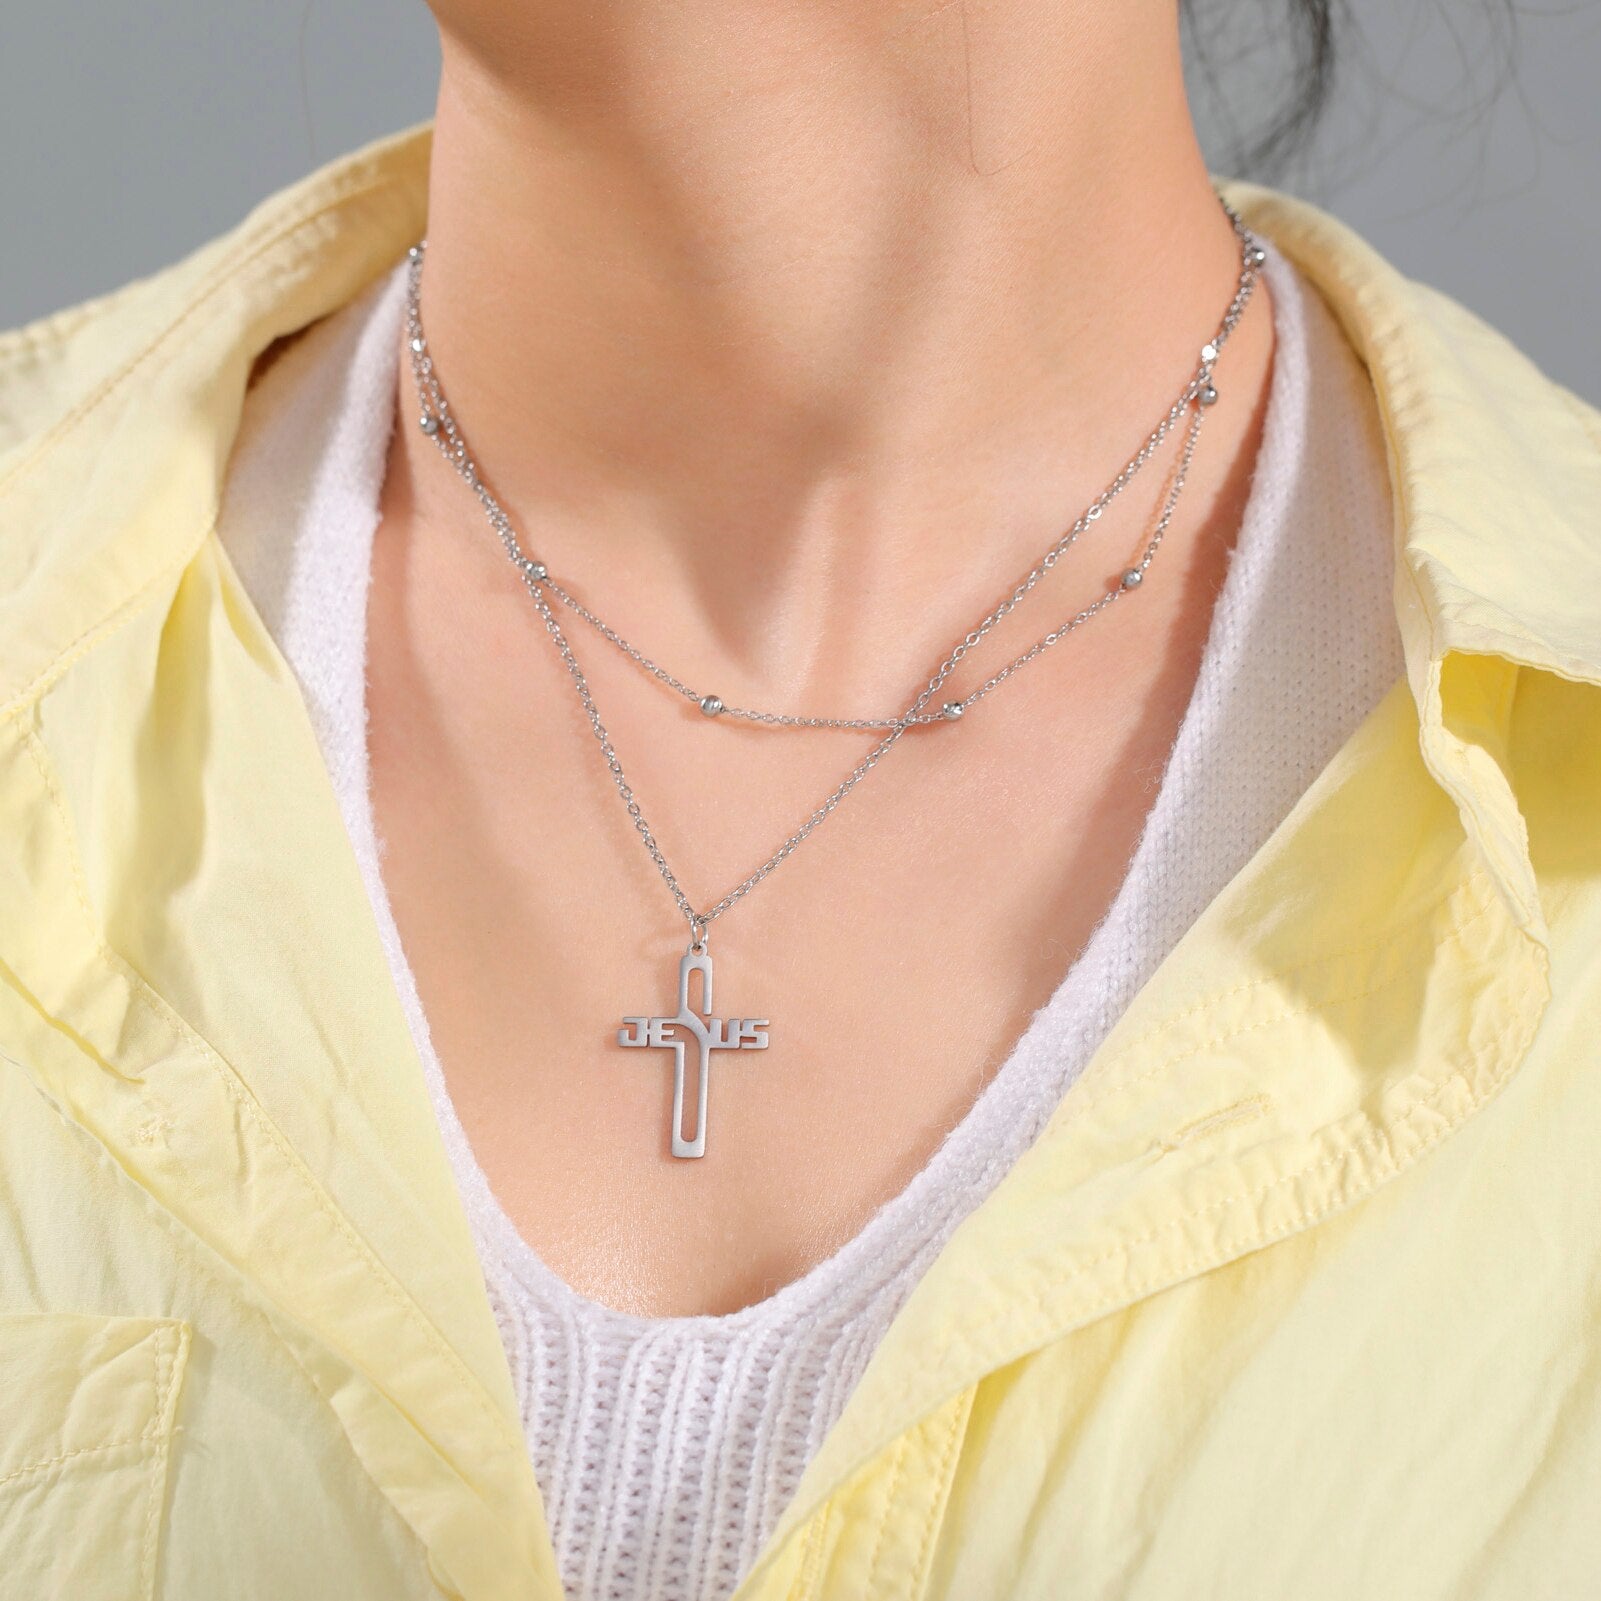 Timeless Faith: Stainless Steel Jesus Cross Pendant Necklace-for Women Men